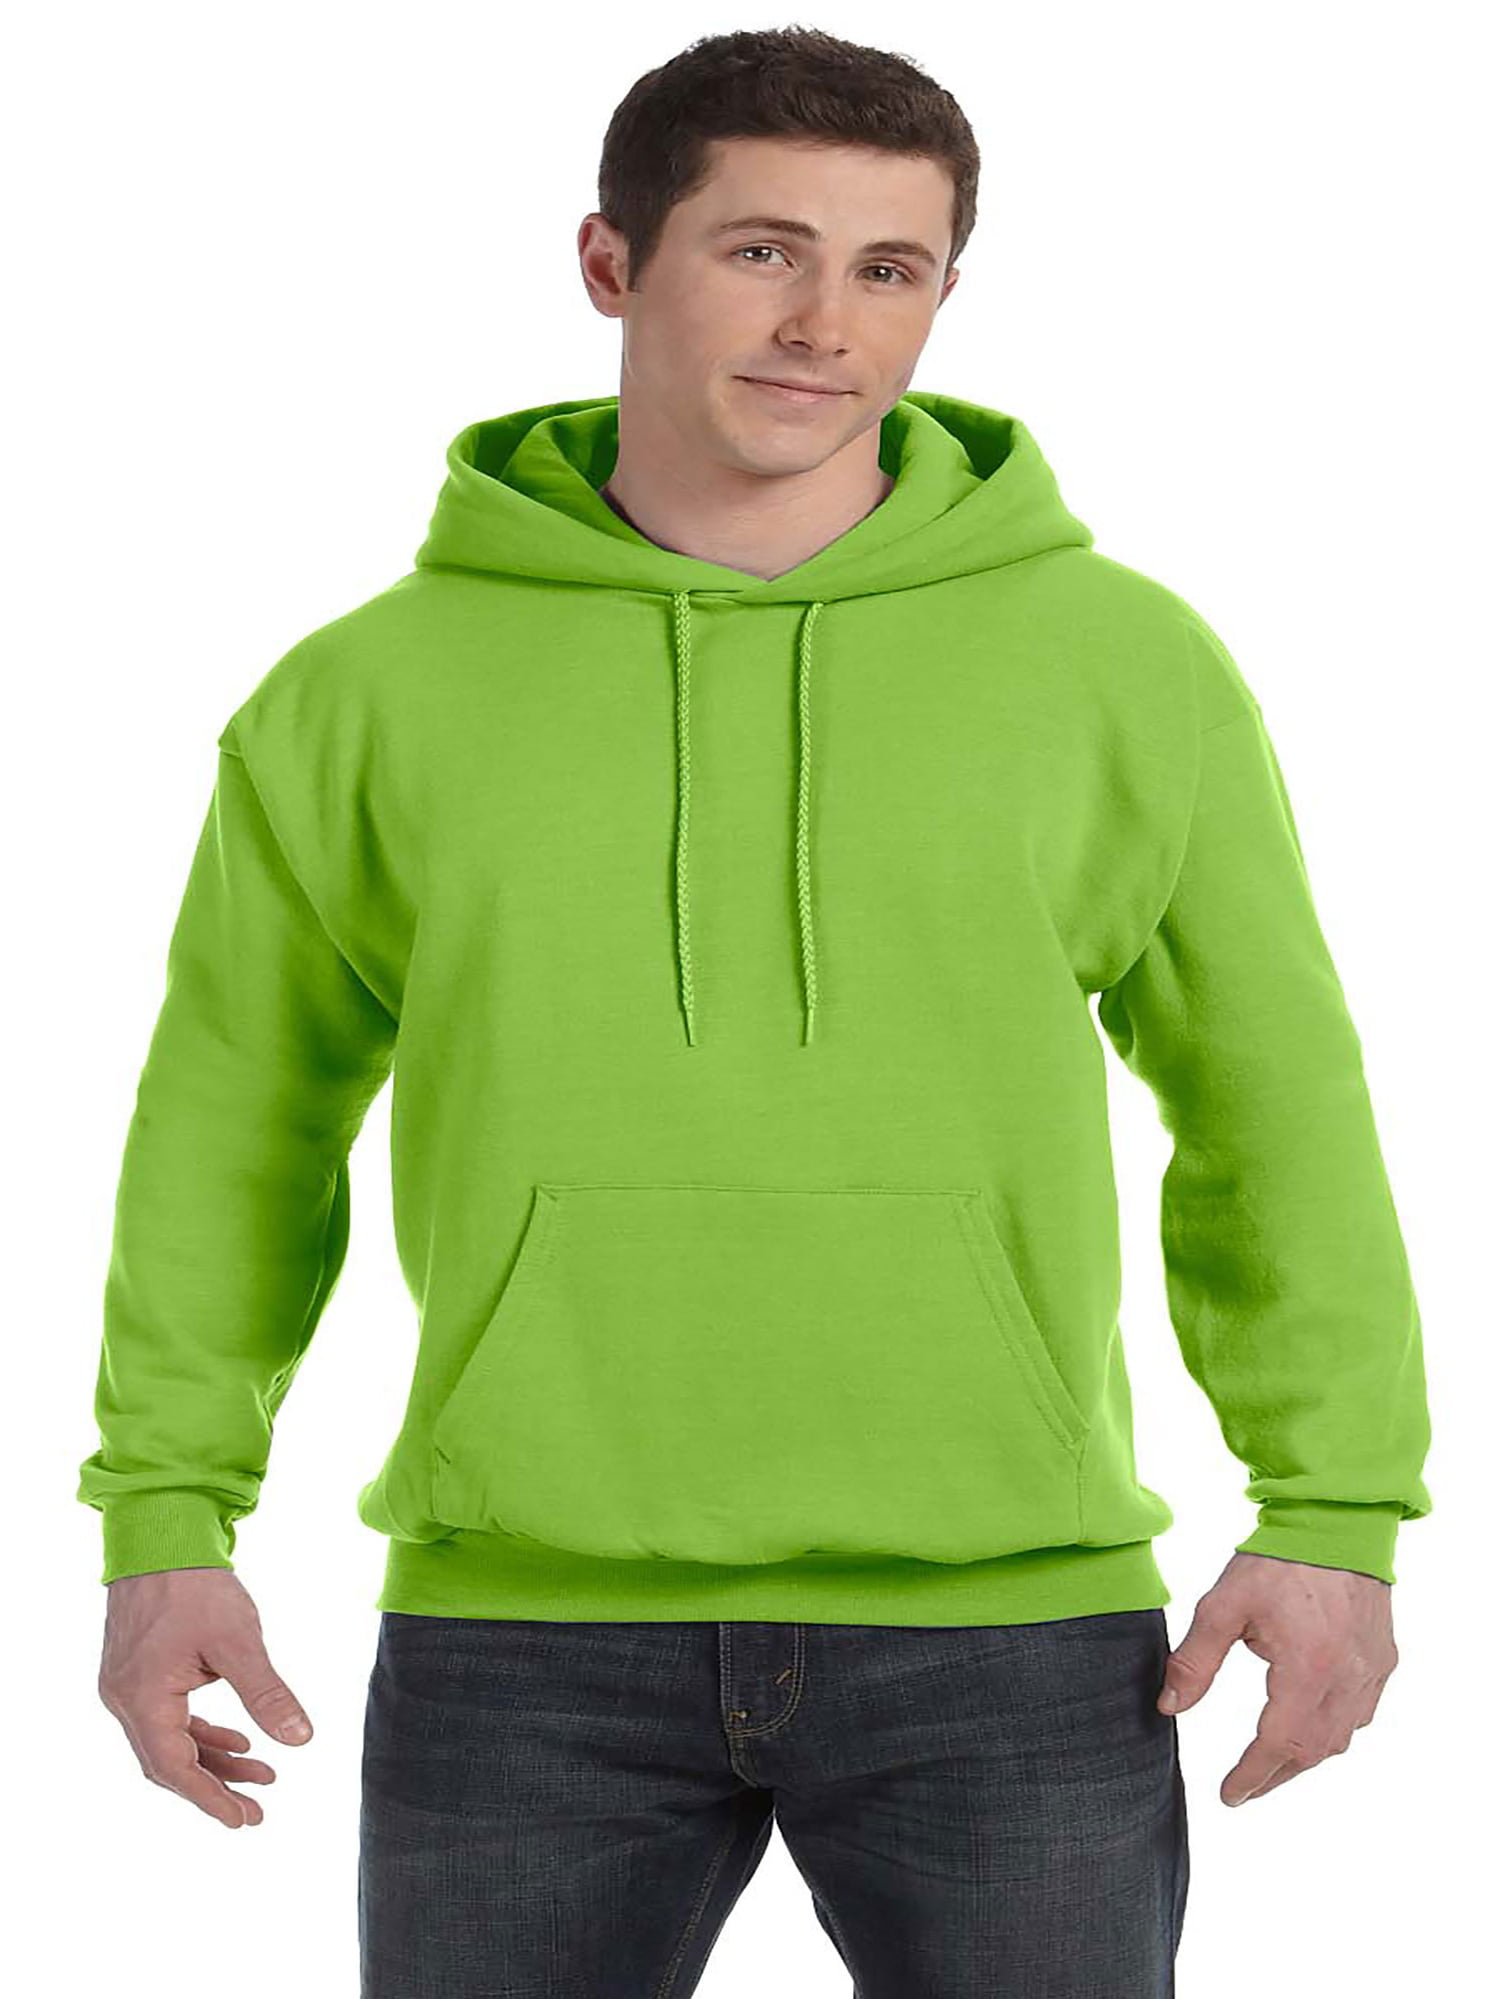 ComfortBlend Men's Pullover Hoodie Sweatshirt, Style P170 - Walmart.com